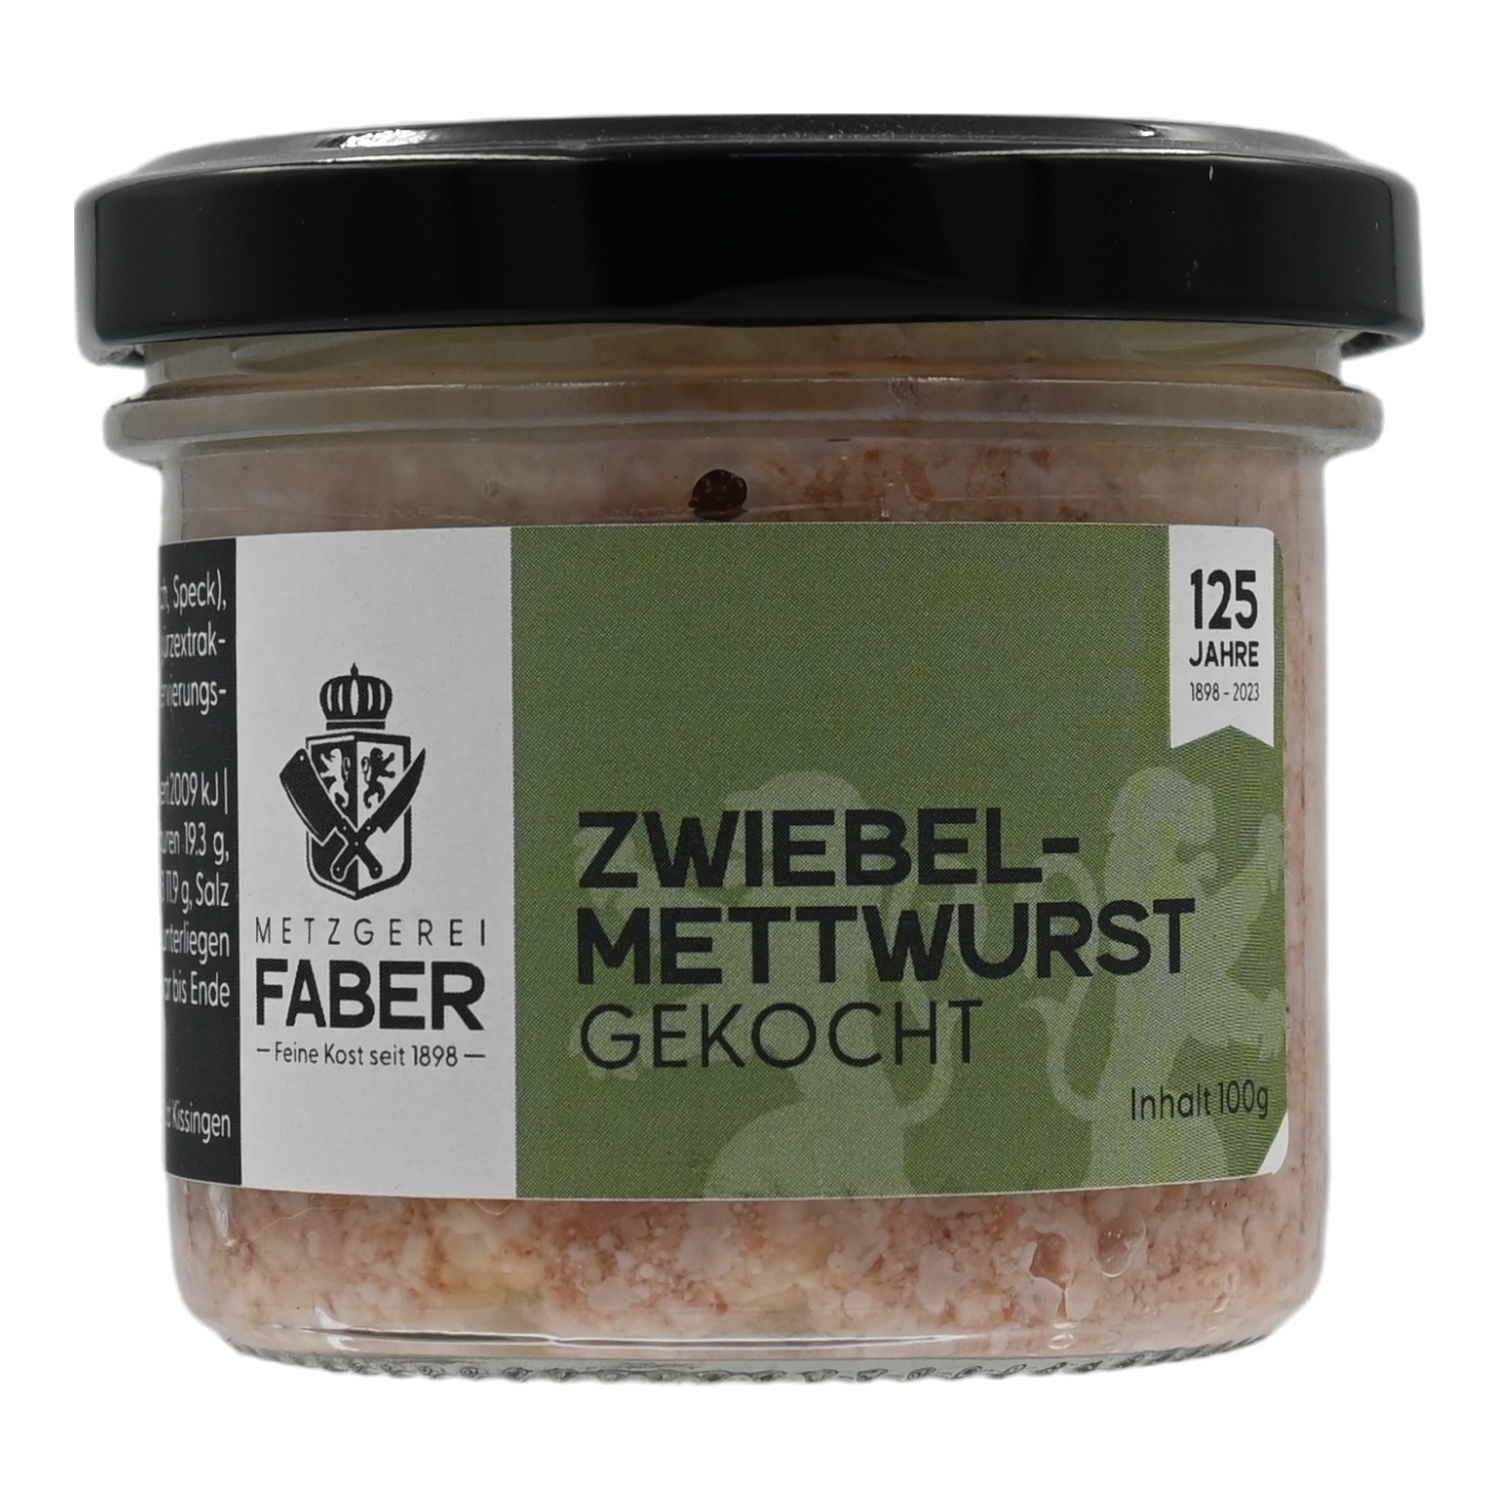 Zwiebelmettwurst gekocht, Delikatess Kochmettwurst mit Zwiebeln, Faber Feinkost 0,1 kg